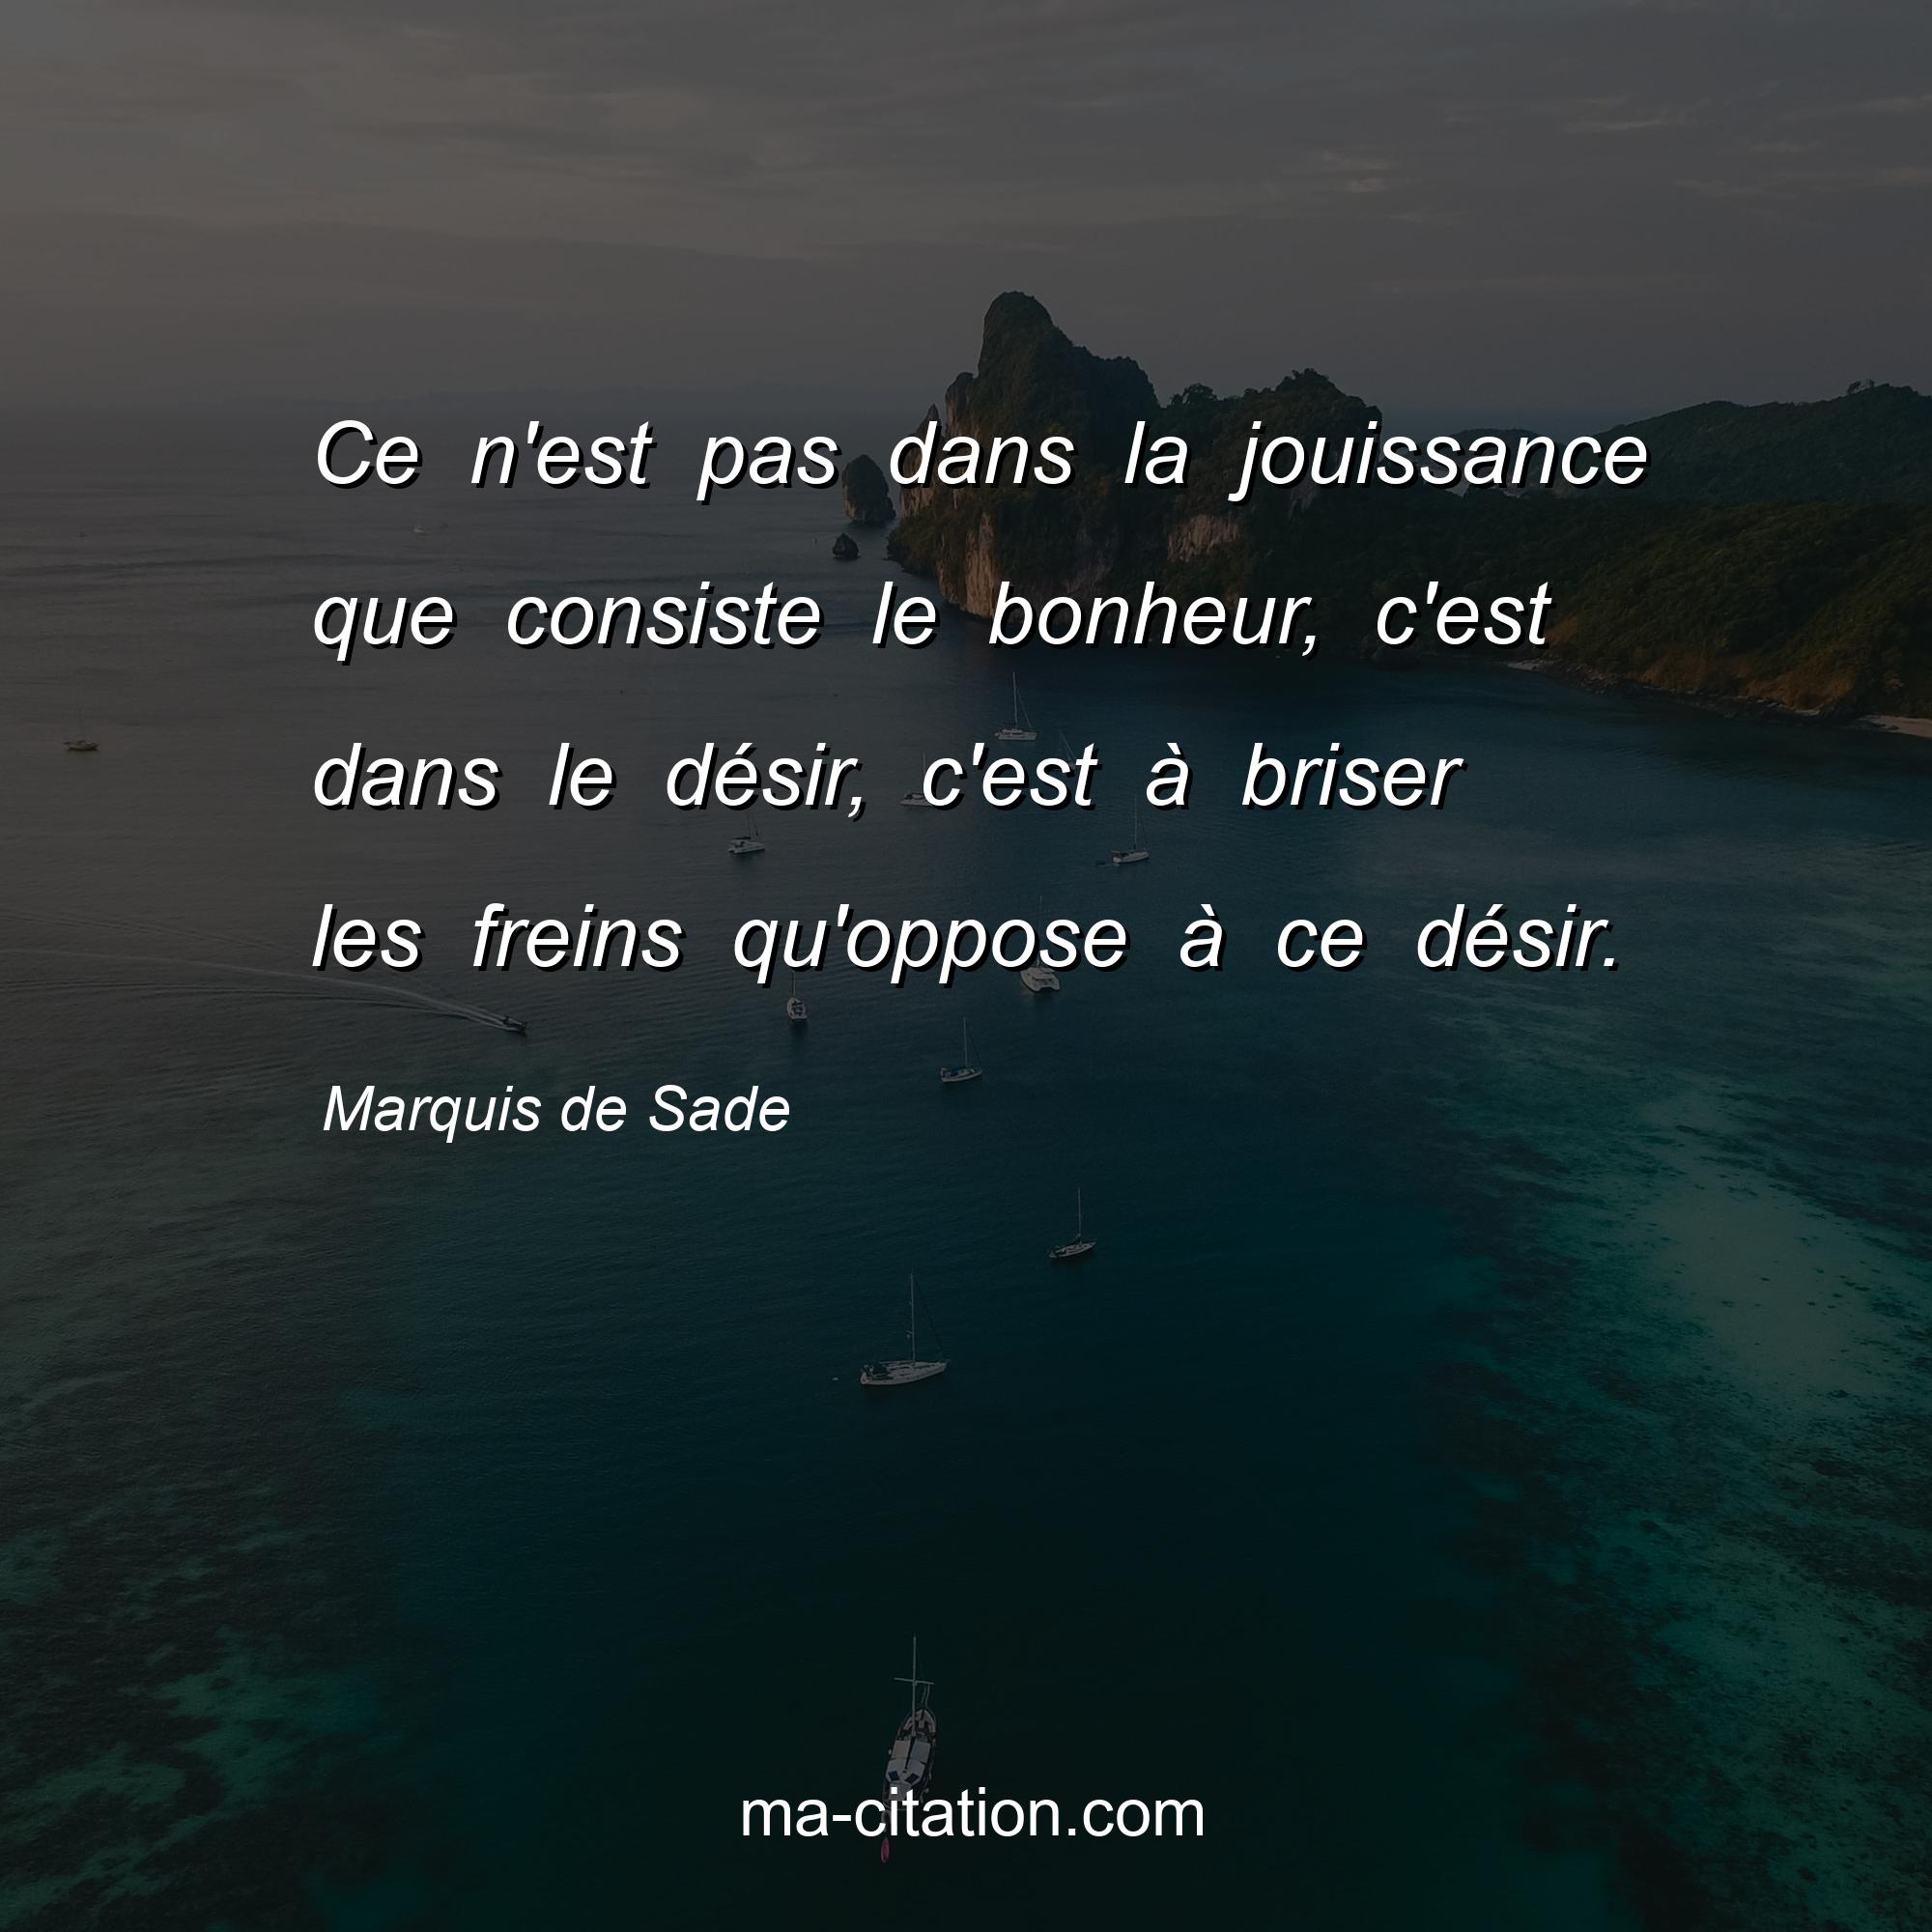 Marquis de Sade : Ce n'est pas dans la jouissance que consiste le bonheur, c'est dans le désir, c'est à briser les freins qu'oppose à ce désir.